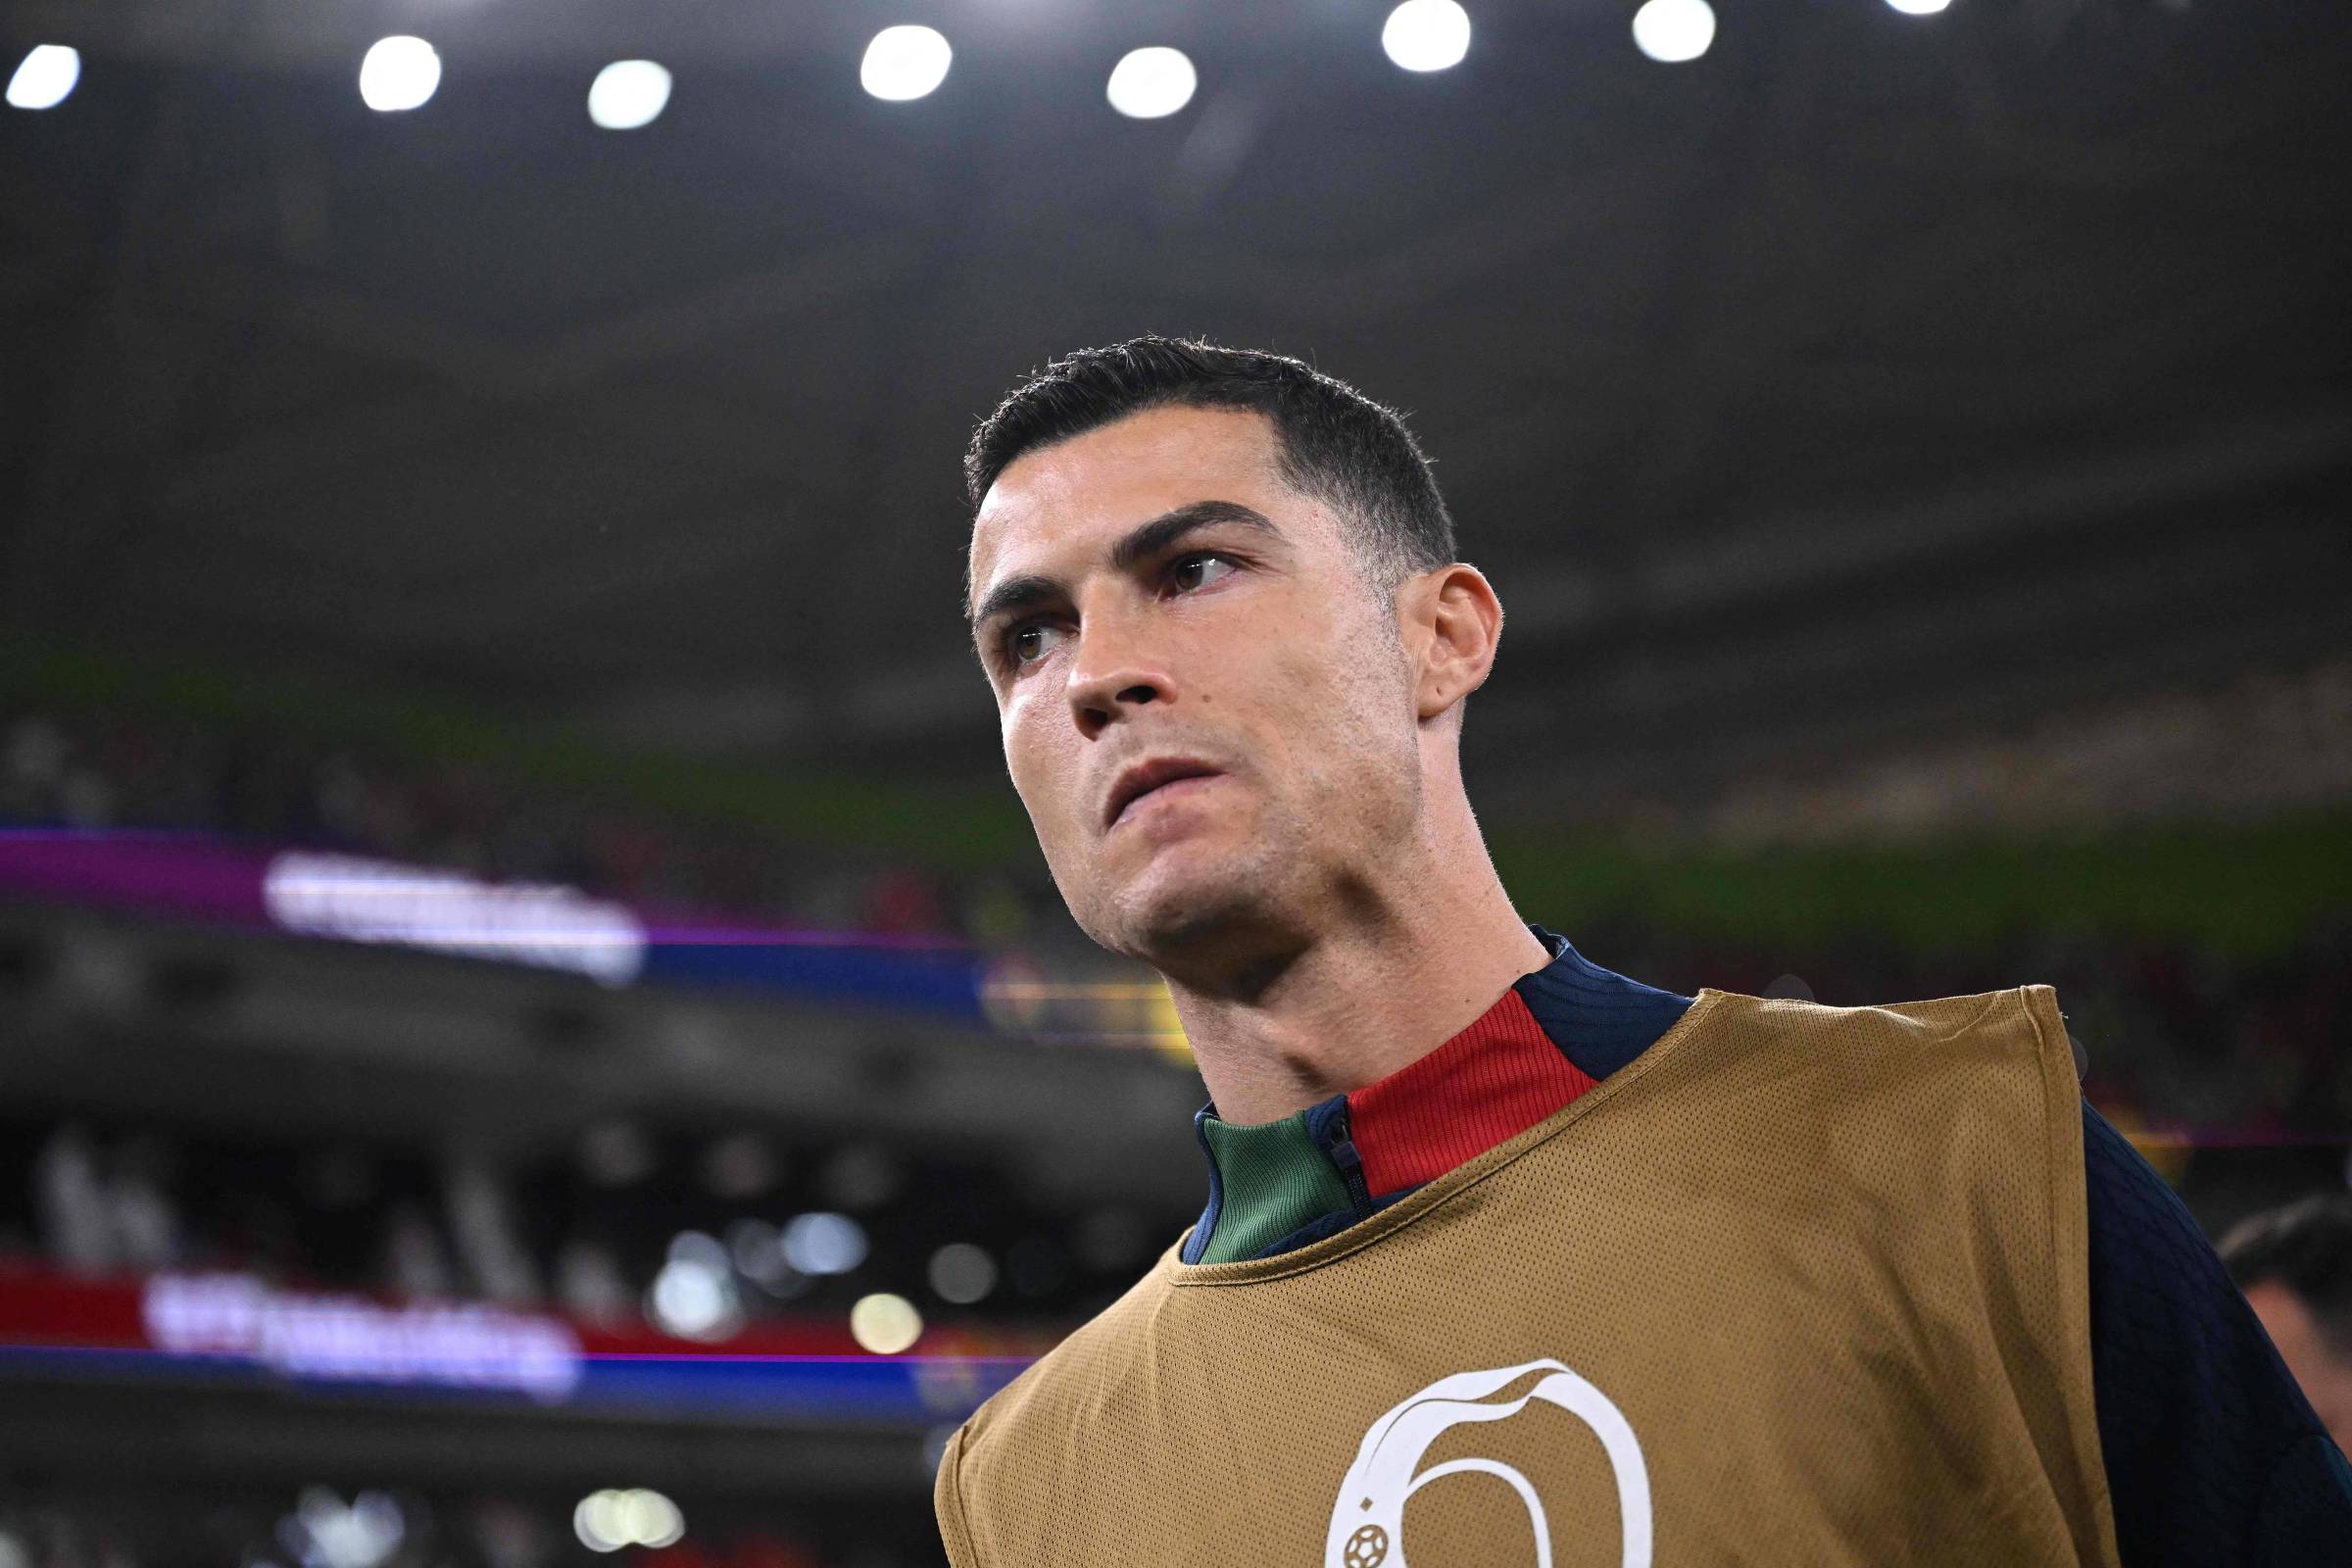 Portugal confirma os 23 convocados para a Copa do Mundo